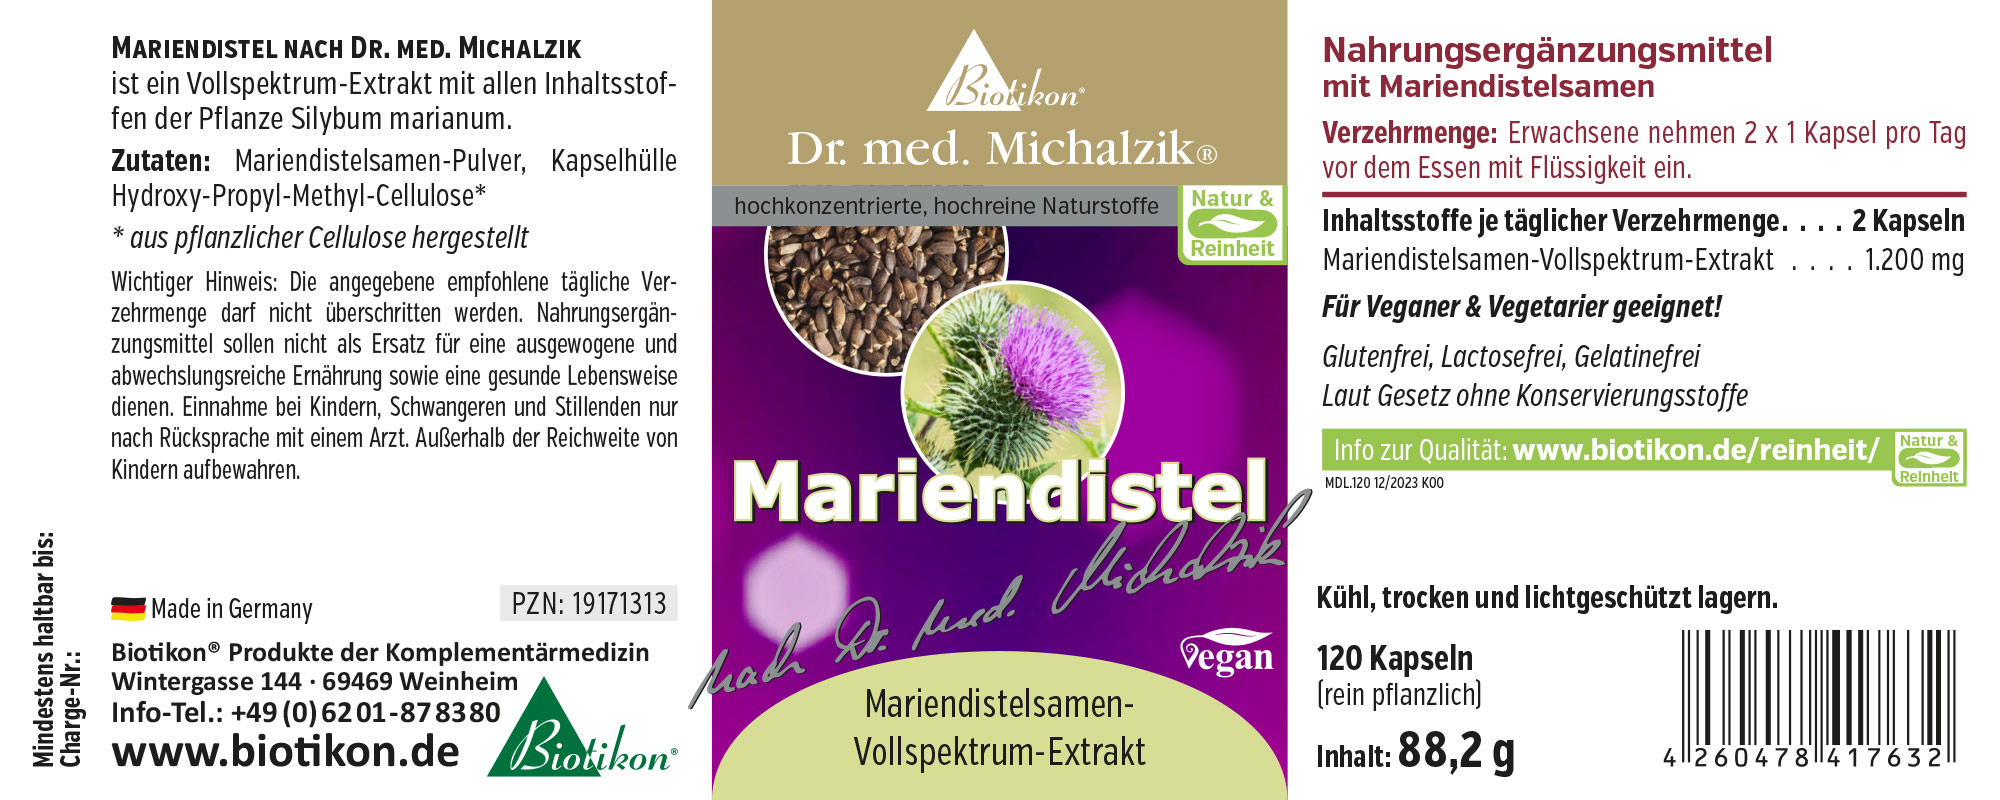 Mariendistel nach Dr. med. Michalzik